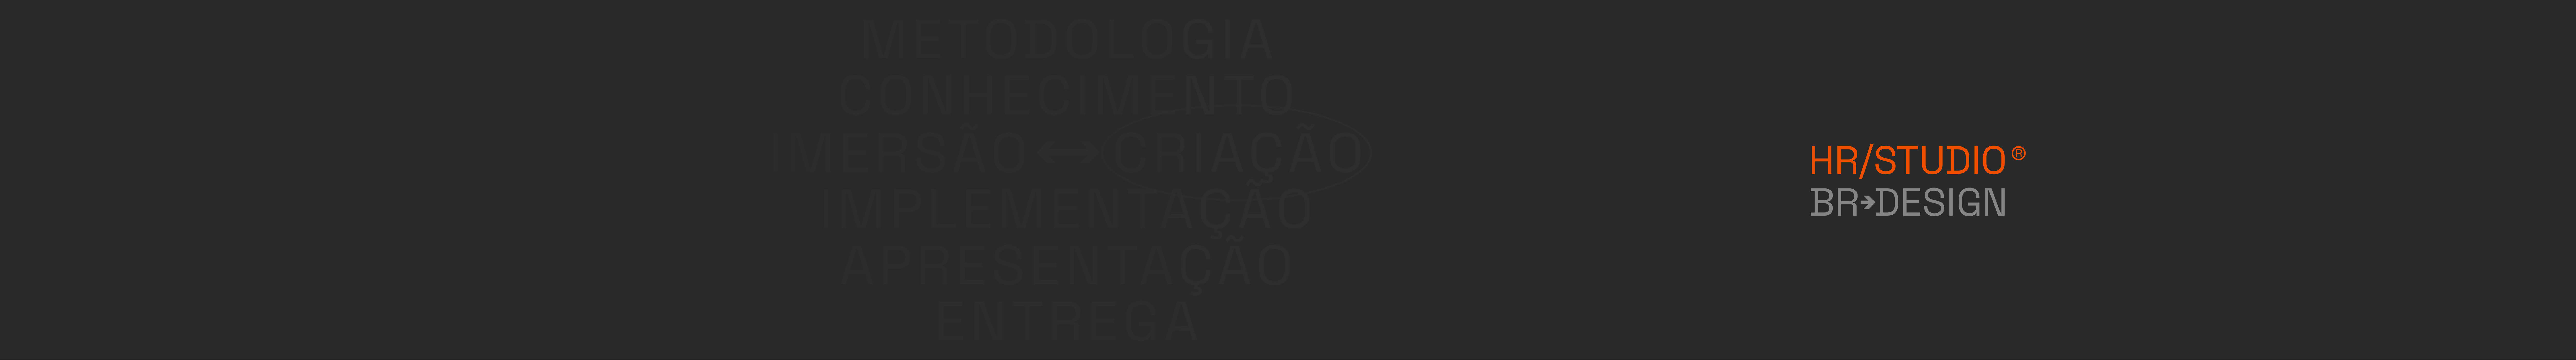 Henrique Regonato's profile banner